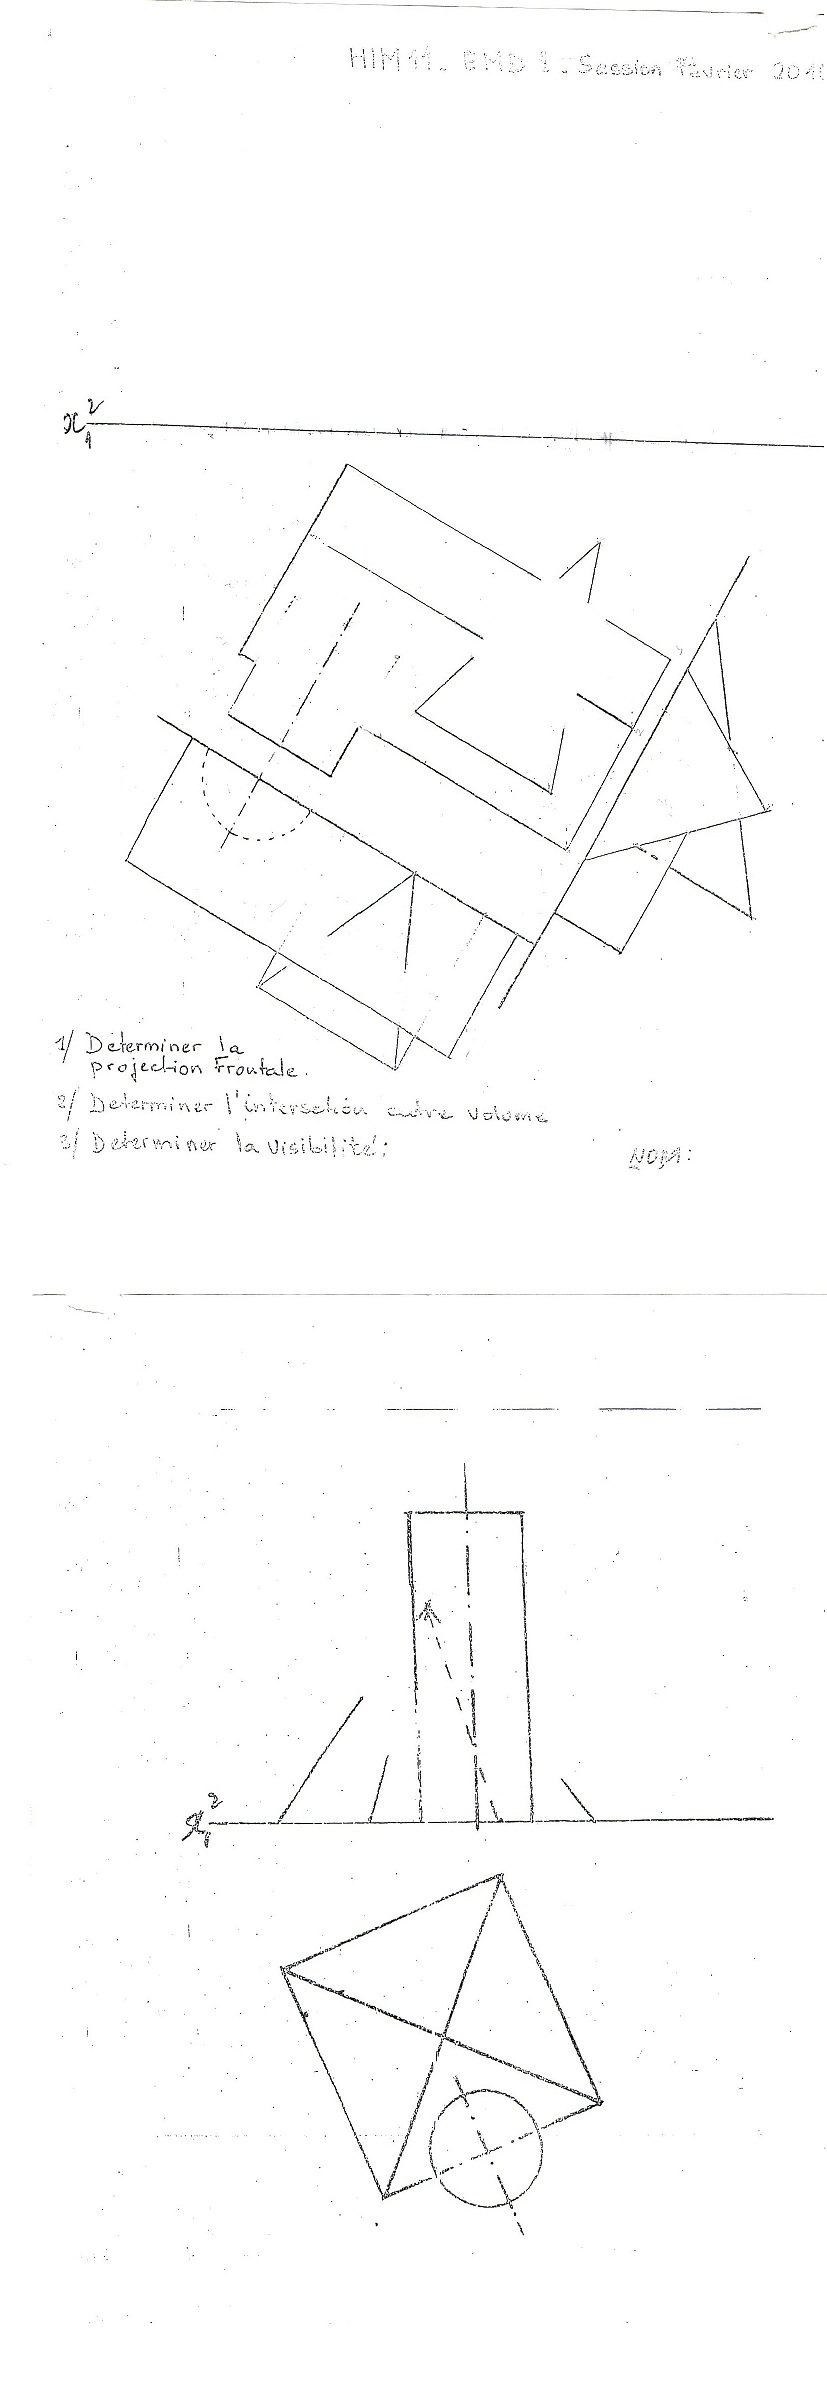 espace-etudiant.net - EMD géométrie descriptive -L1 architecture-.jpg